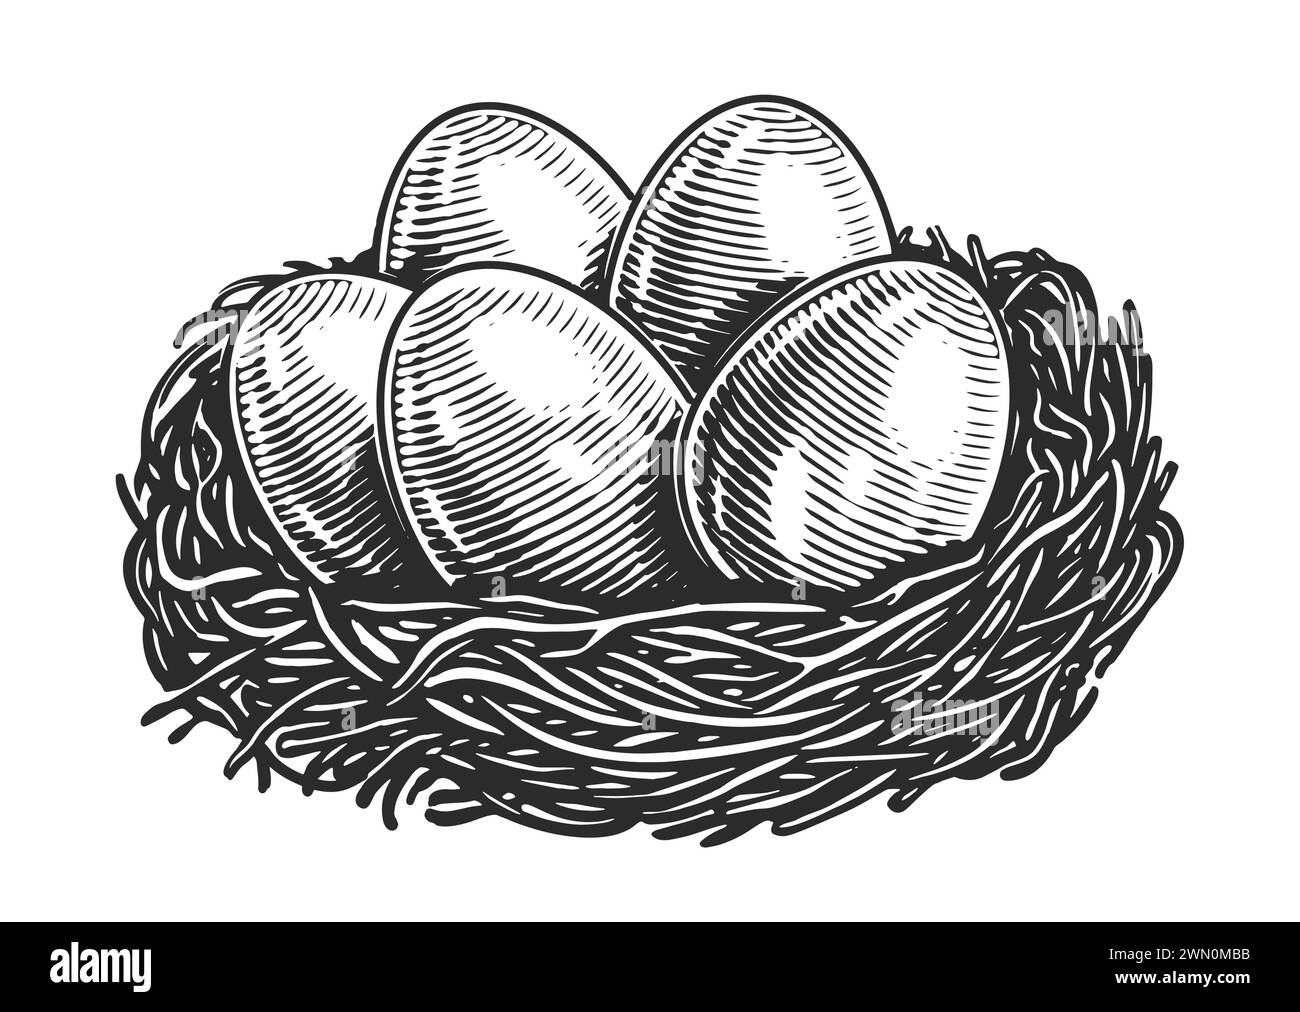 Hühnereier im Nest. Bio-Lebensmittel vom Bauernhof. Handgezeichnete Skizze Vintage Vektor Illustration Stock Vektor